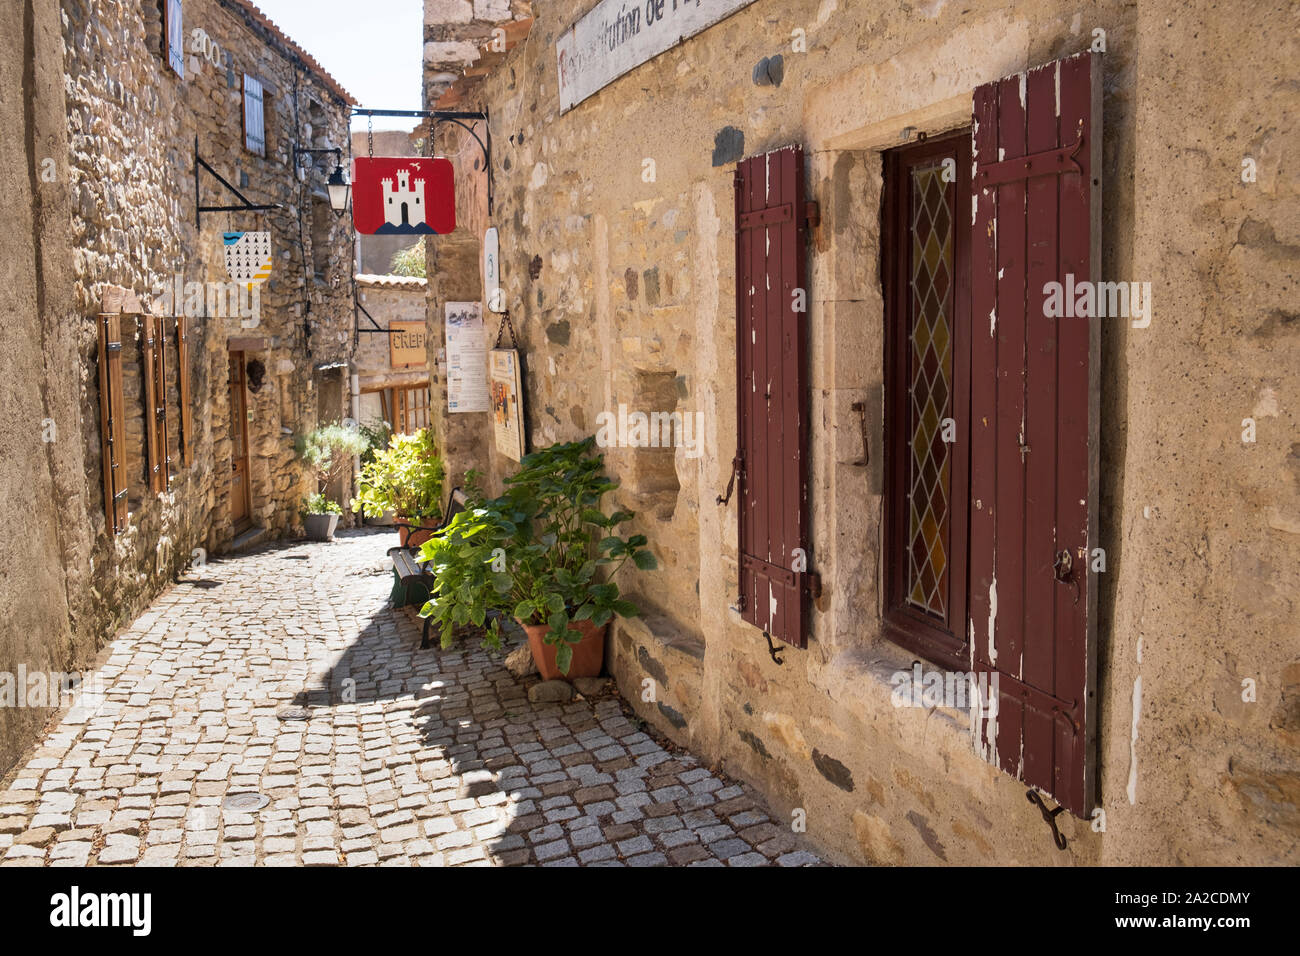 Hübsch gepflasterten Straße in Sète, Frankreich, traditionelle alte Häuser mit Fensterläden Stockfoto